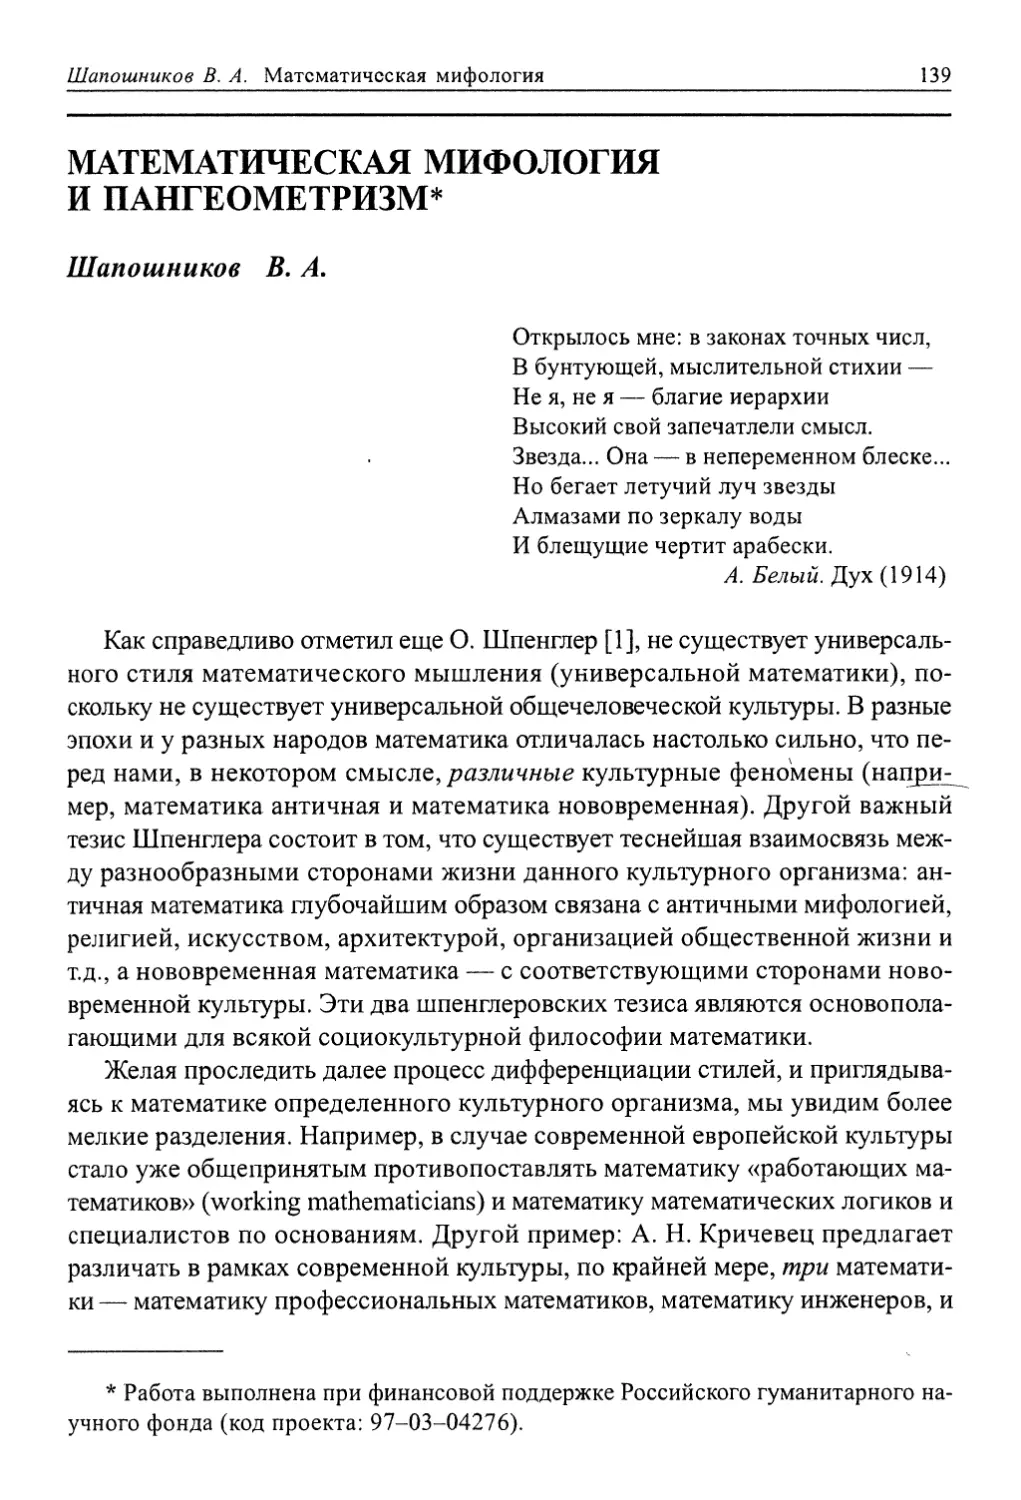 Шапошников В. А. Математическая мифология и пангеометризм